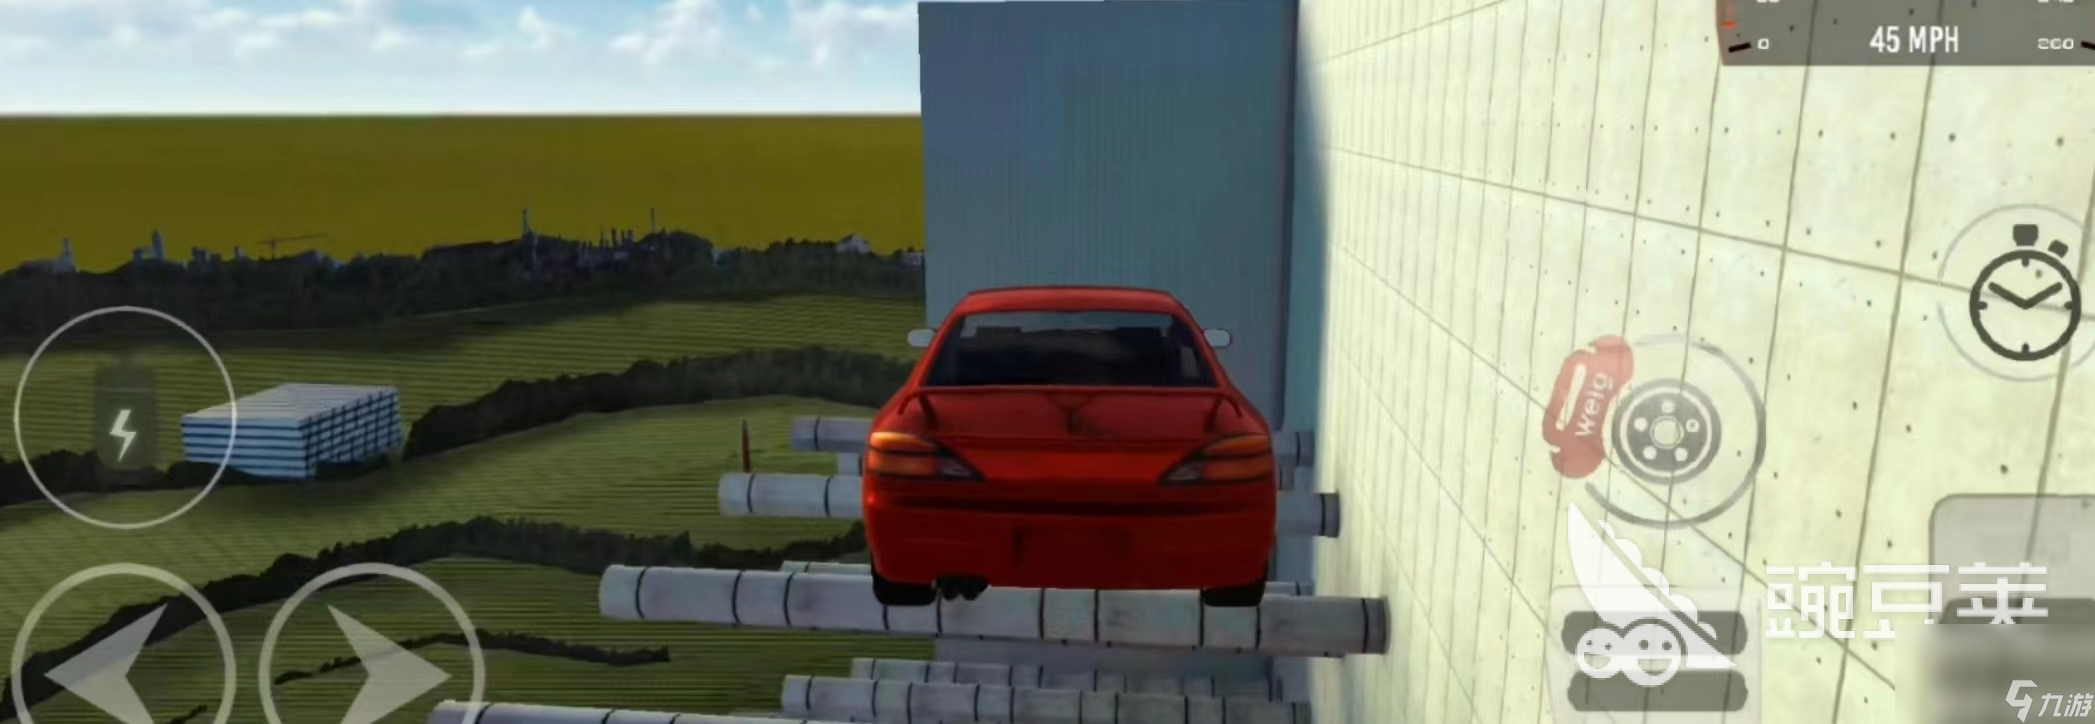 真实汽车碰撞模拟器下载最新版2022 真实汽车碰撞模拟器下载渠道